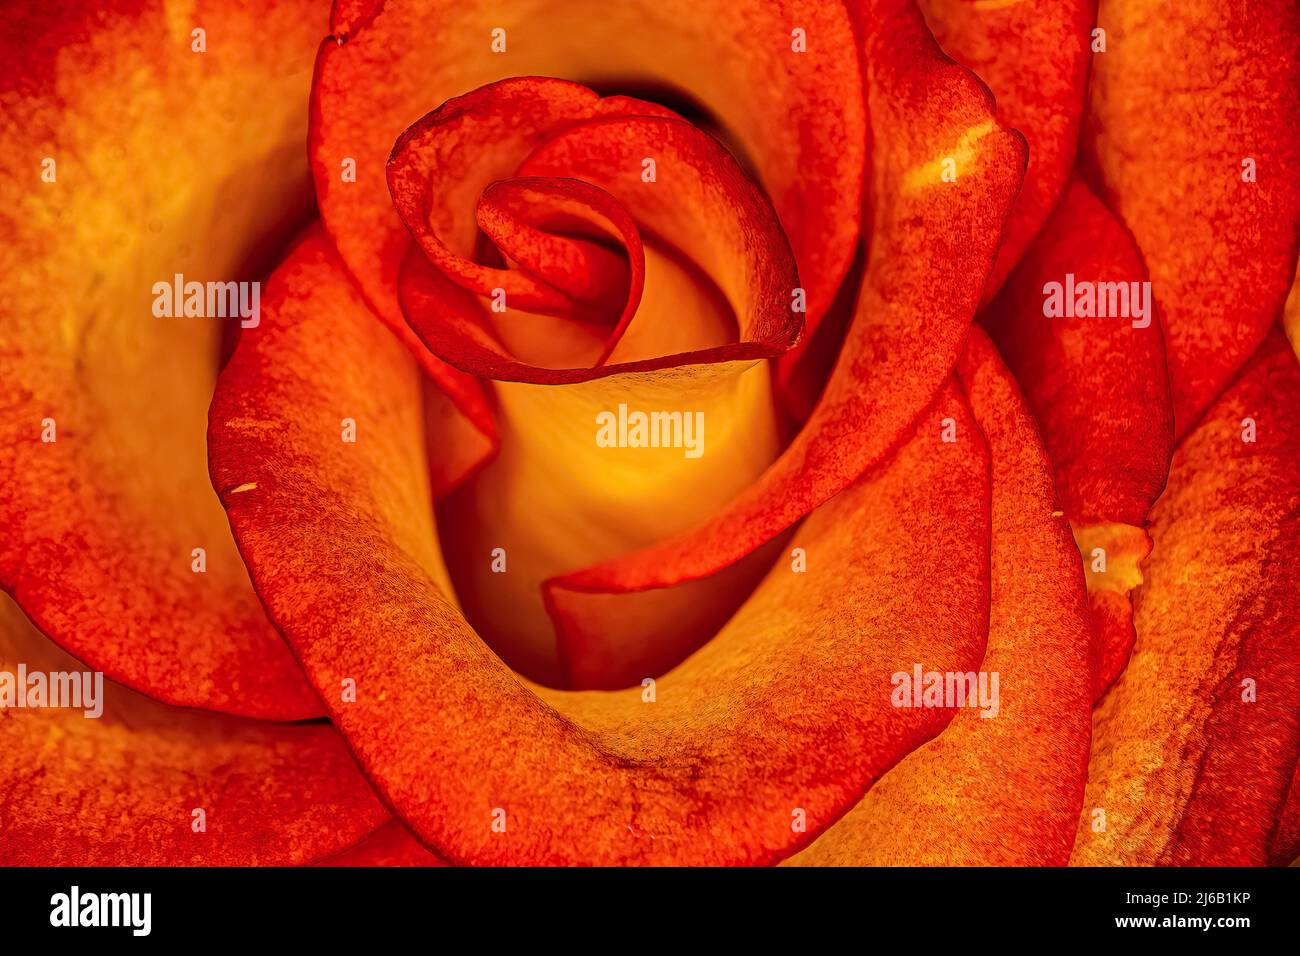 Eine wunderschöne rote Rose mit einem warmen gelben Licht, das sie zum Leuchten bringt Stockfoto